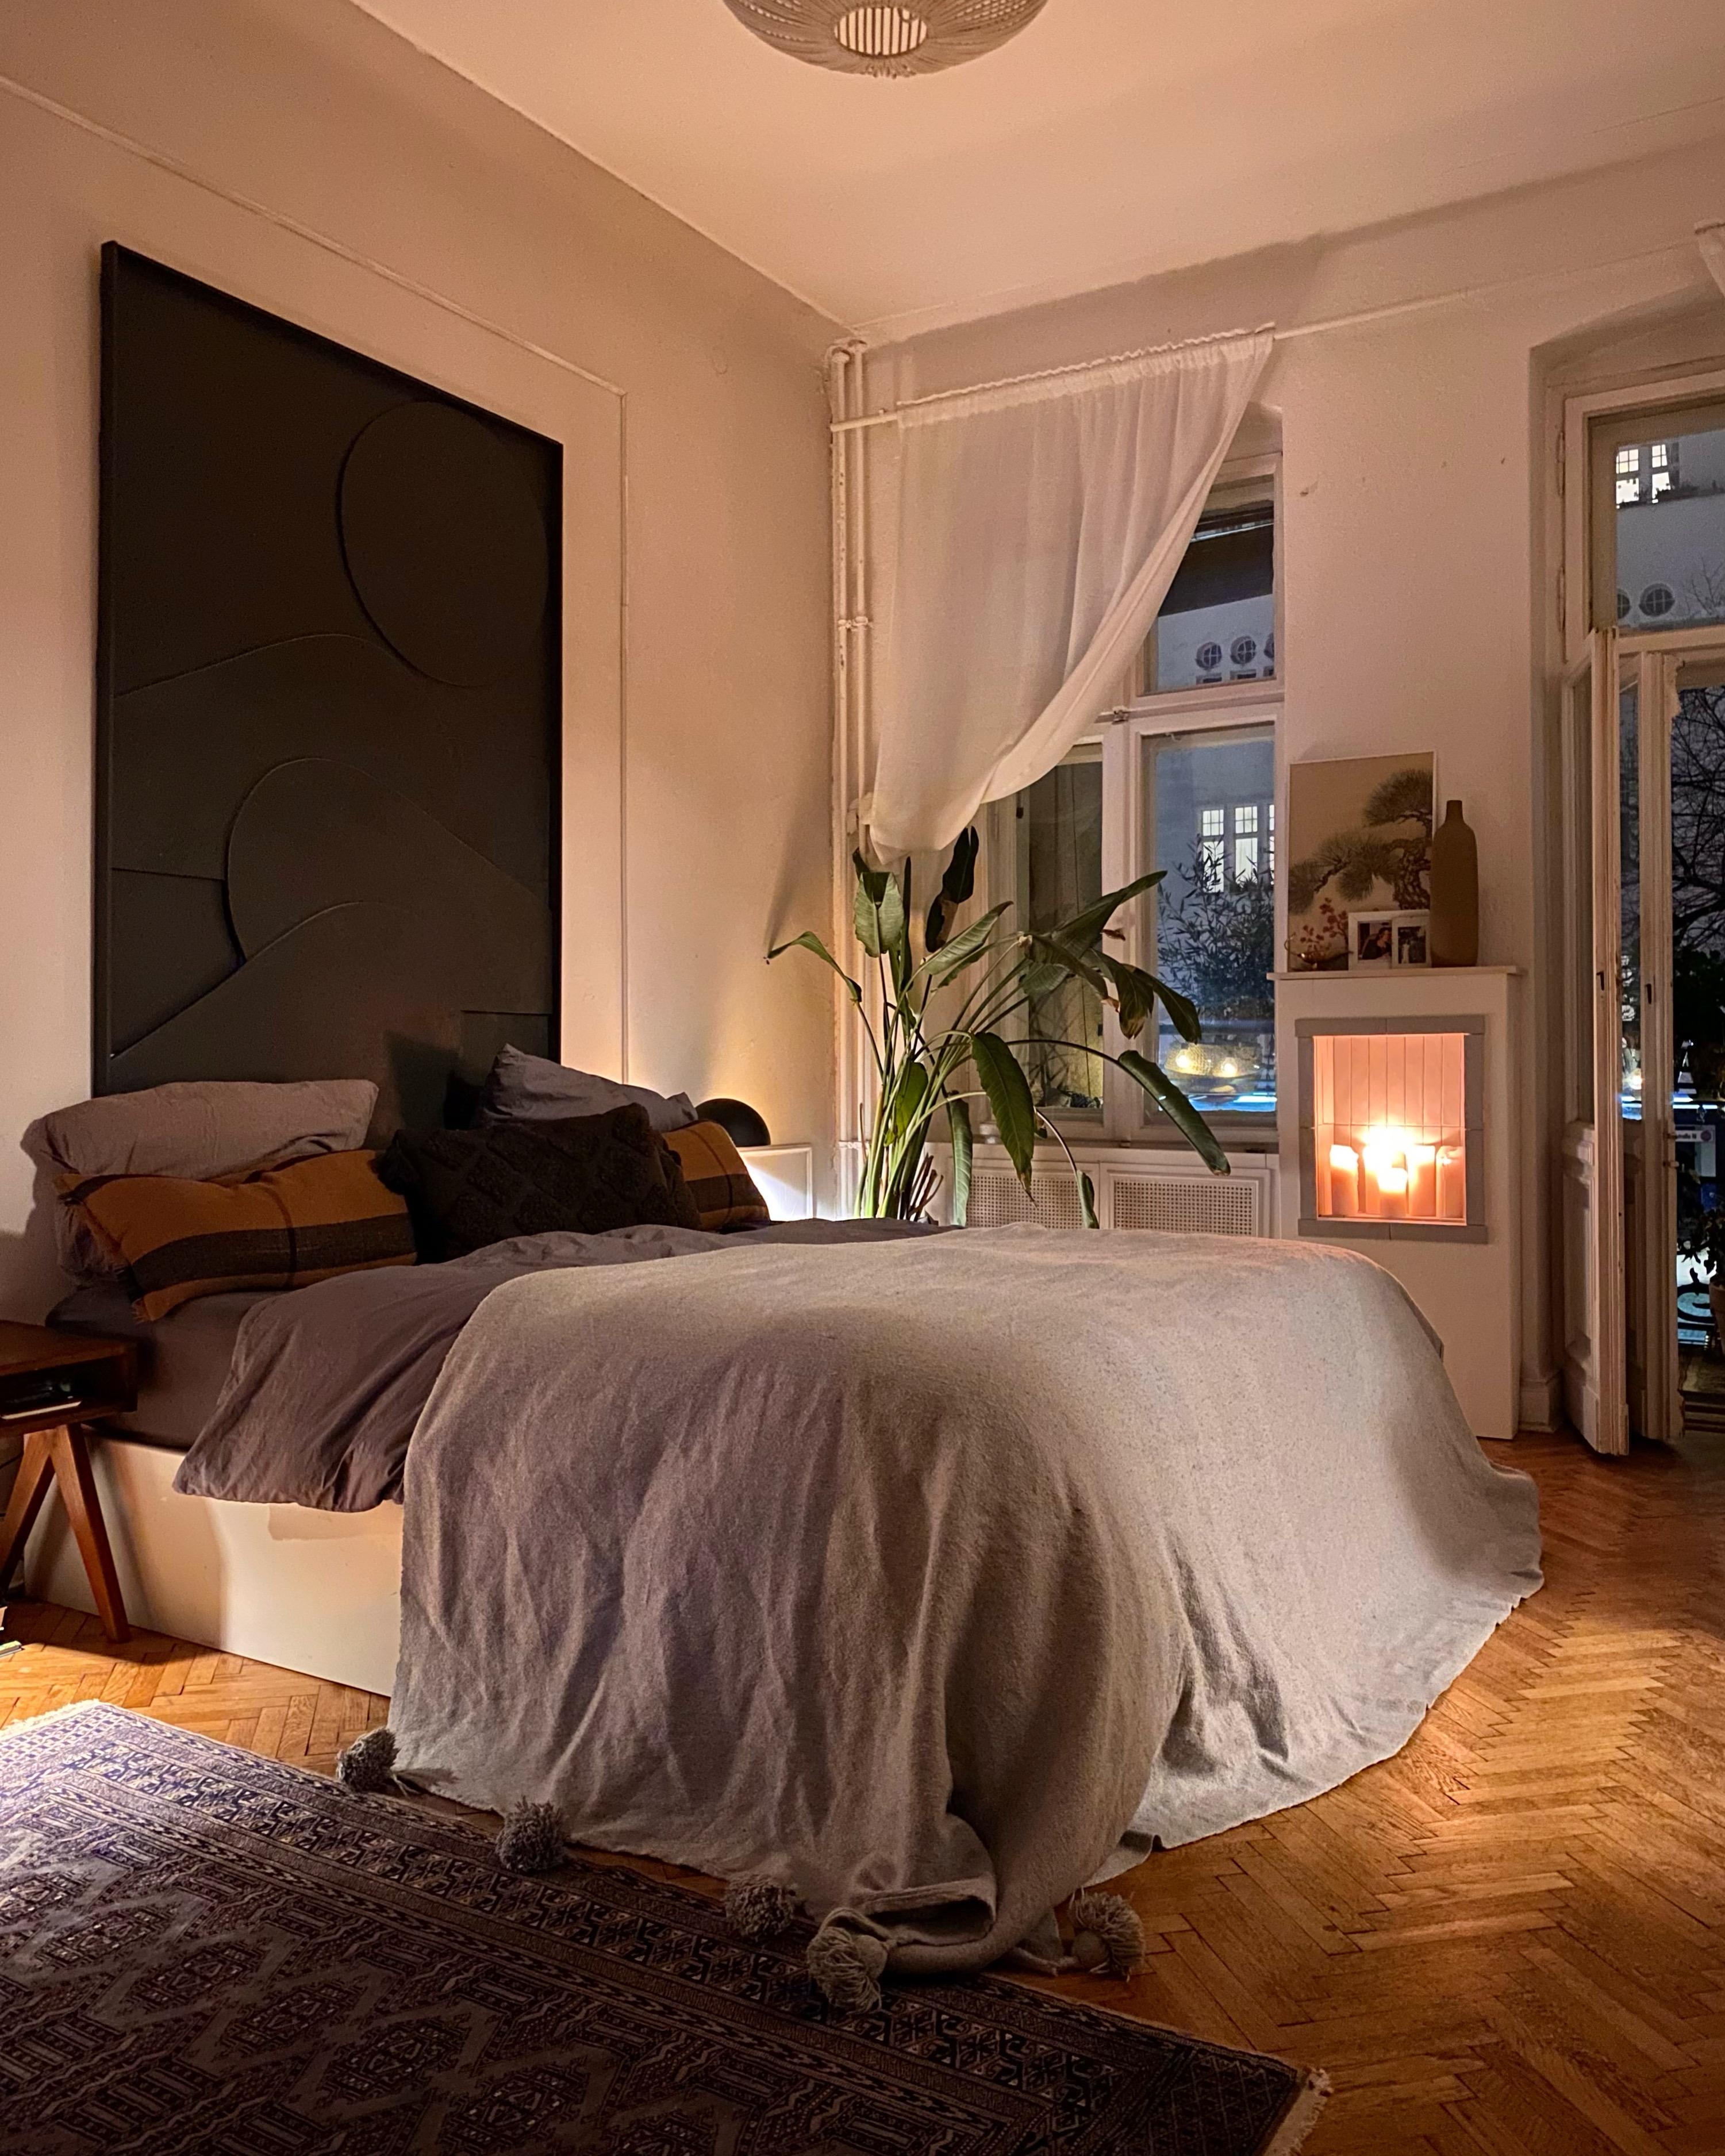 ♥️ #schlafzimmer #bedroom #bett #holzboden #kamin #altbau #berlin